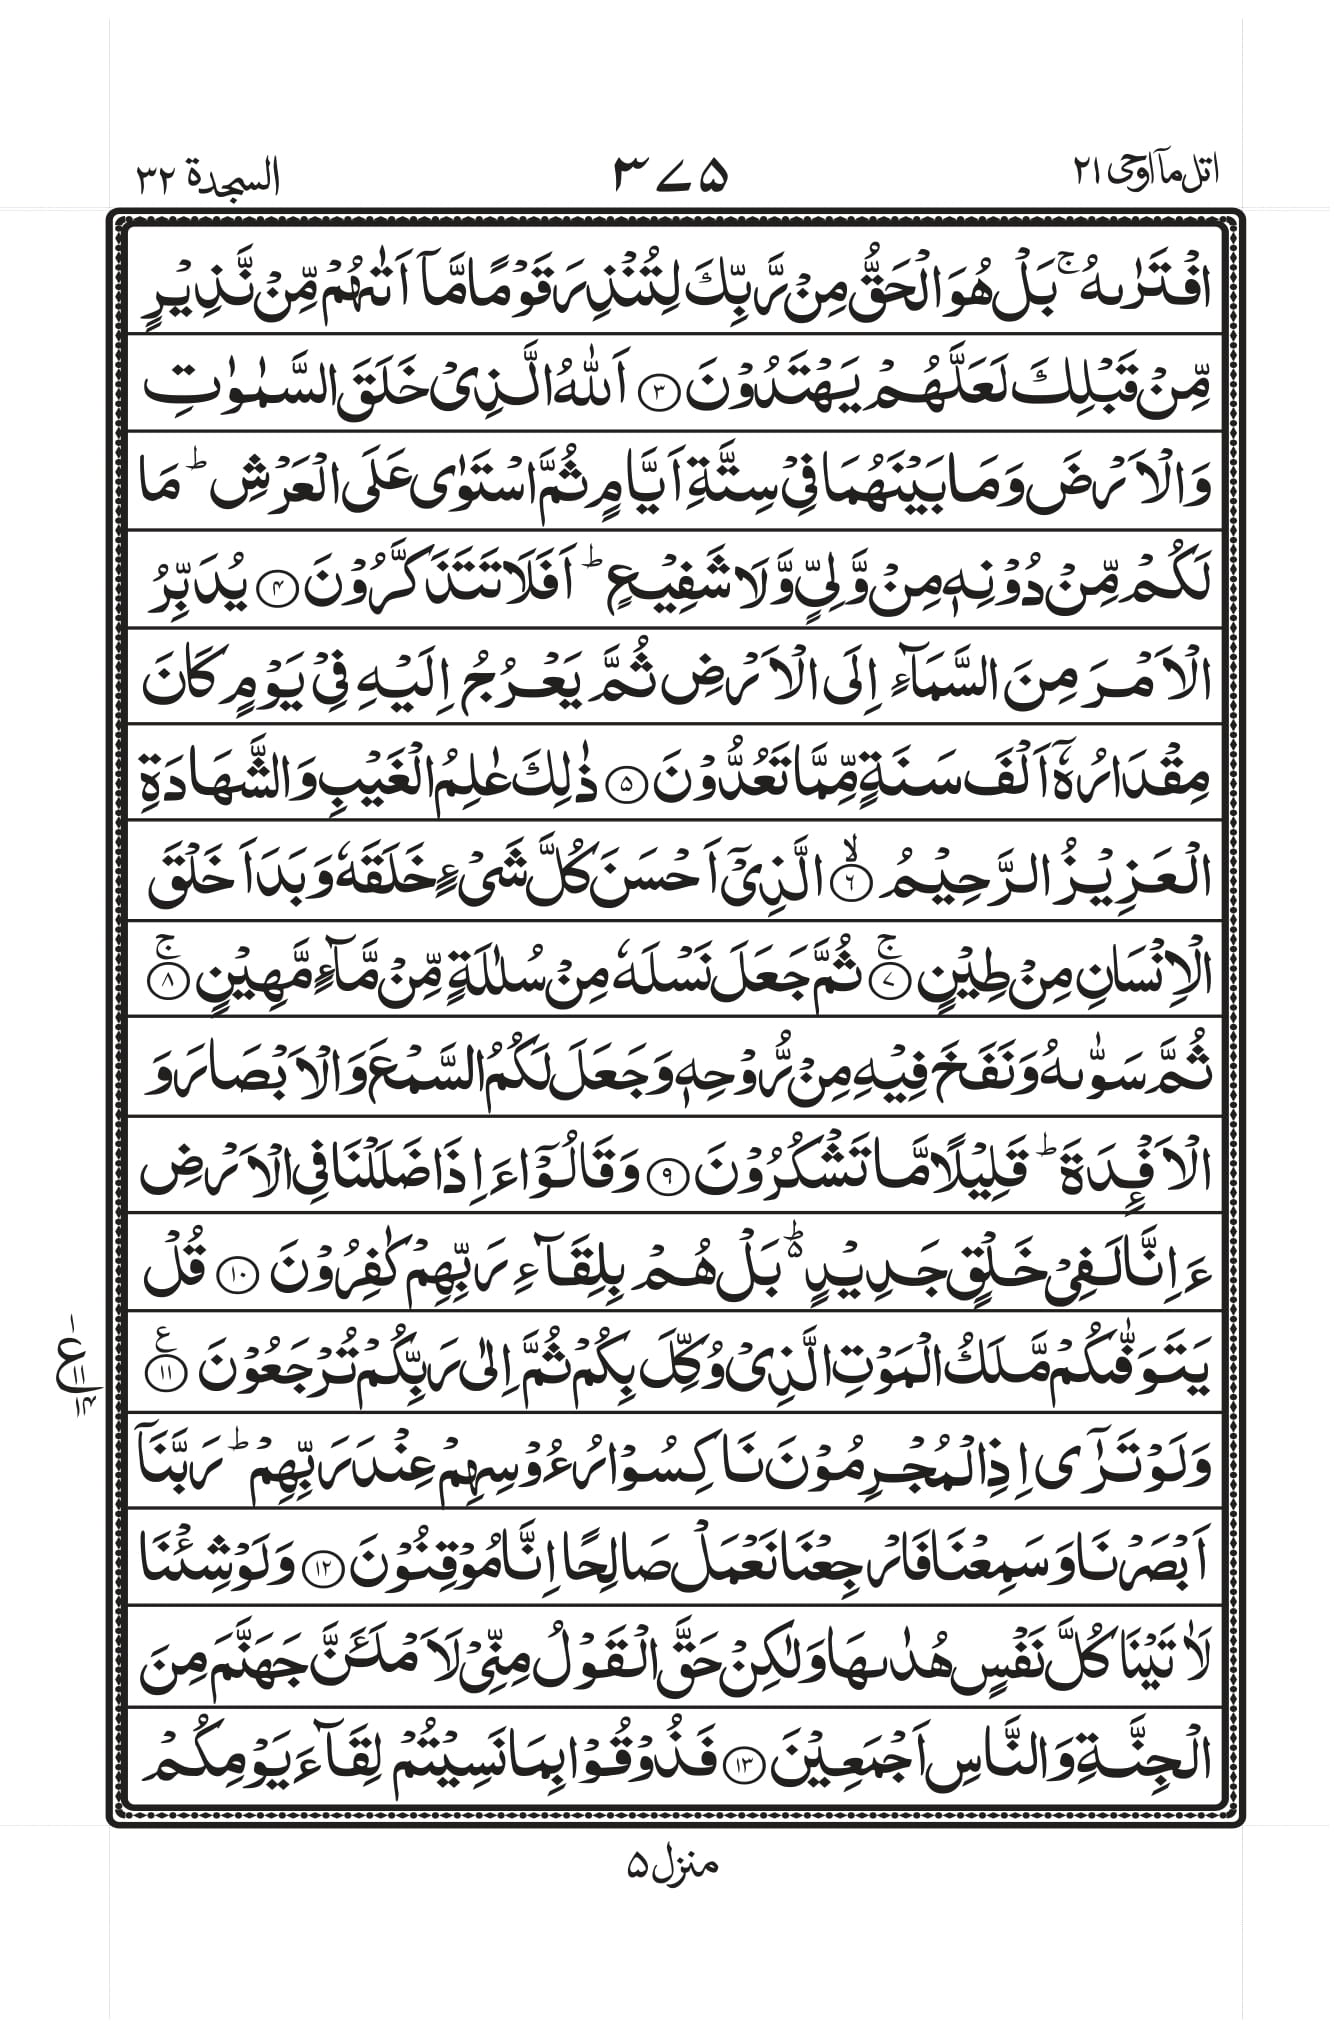 Surah Sajdah Urdu/Tahirul Qadri PDF - Download Urdu/Tahirul Qadri